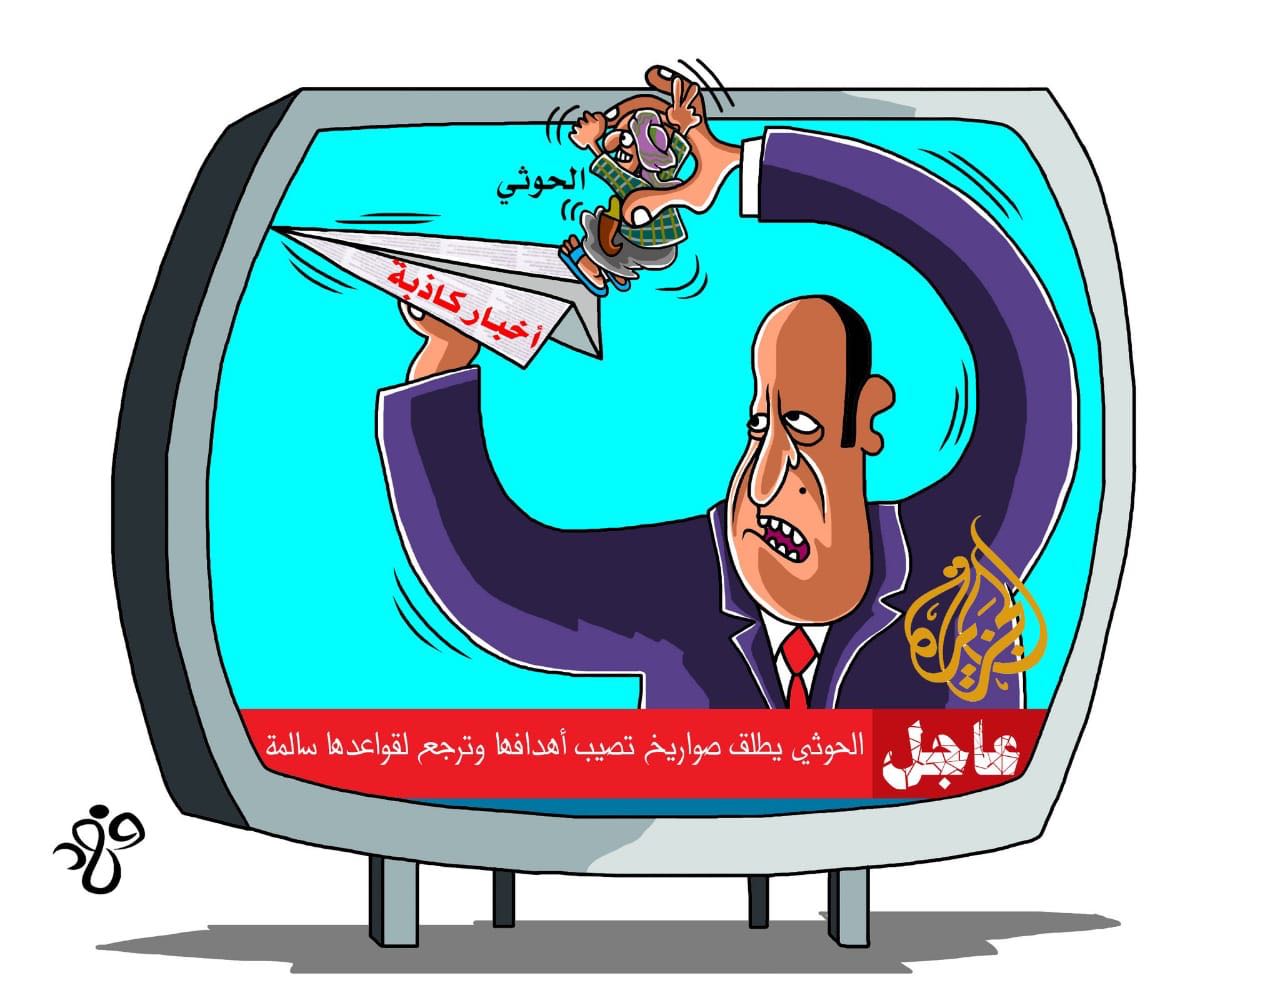 قناة الجزيرة.. بوق تنظيم الحمدين لترويج الأكاذيب والشائعات